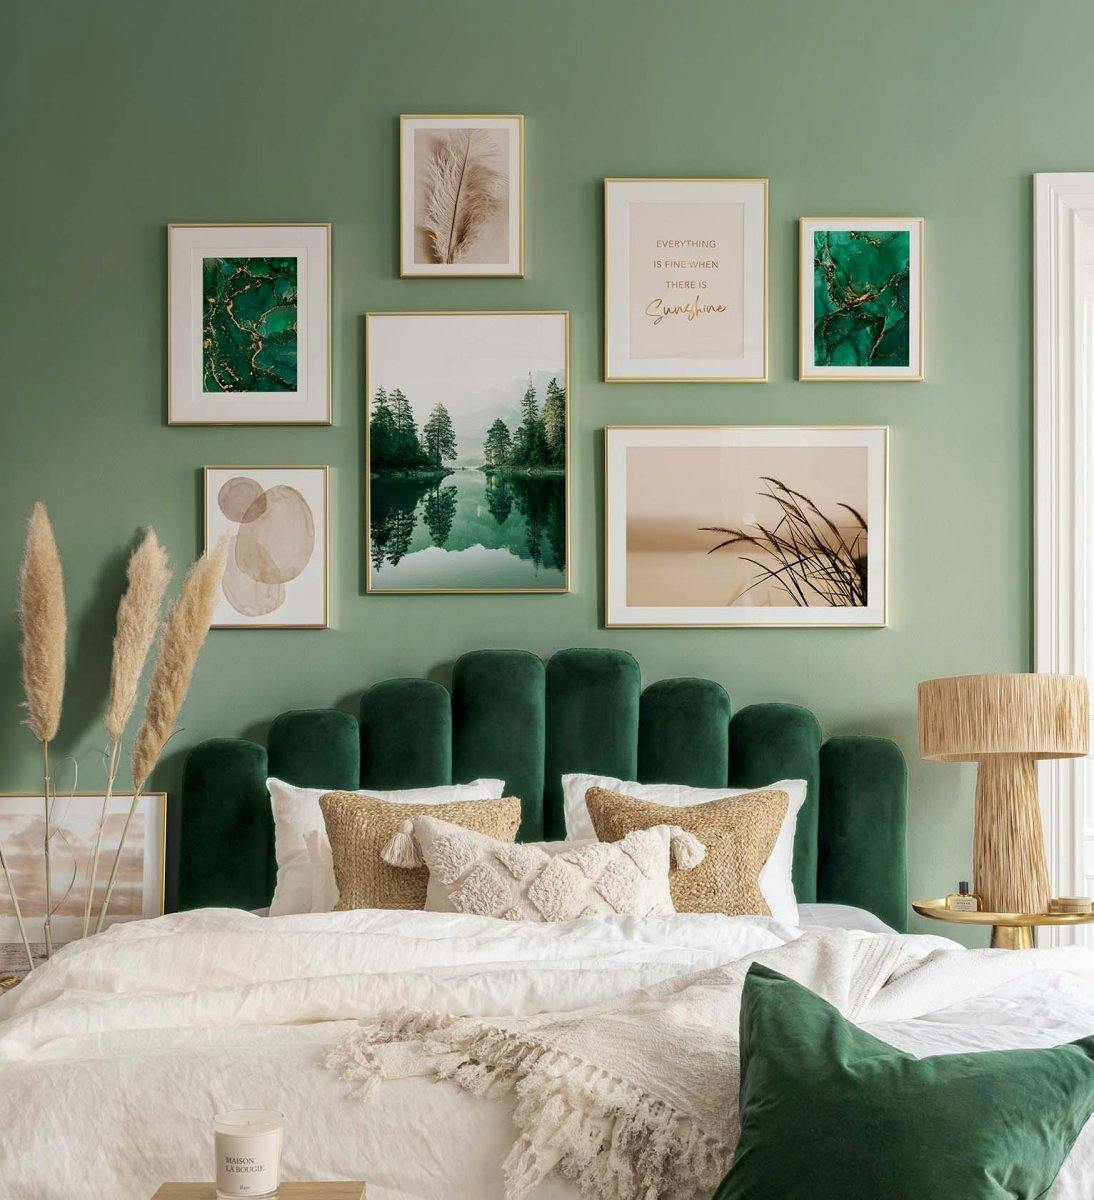 Fotowand met natuurprints in groen en beige met gouden kaders voor slaapkamer